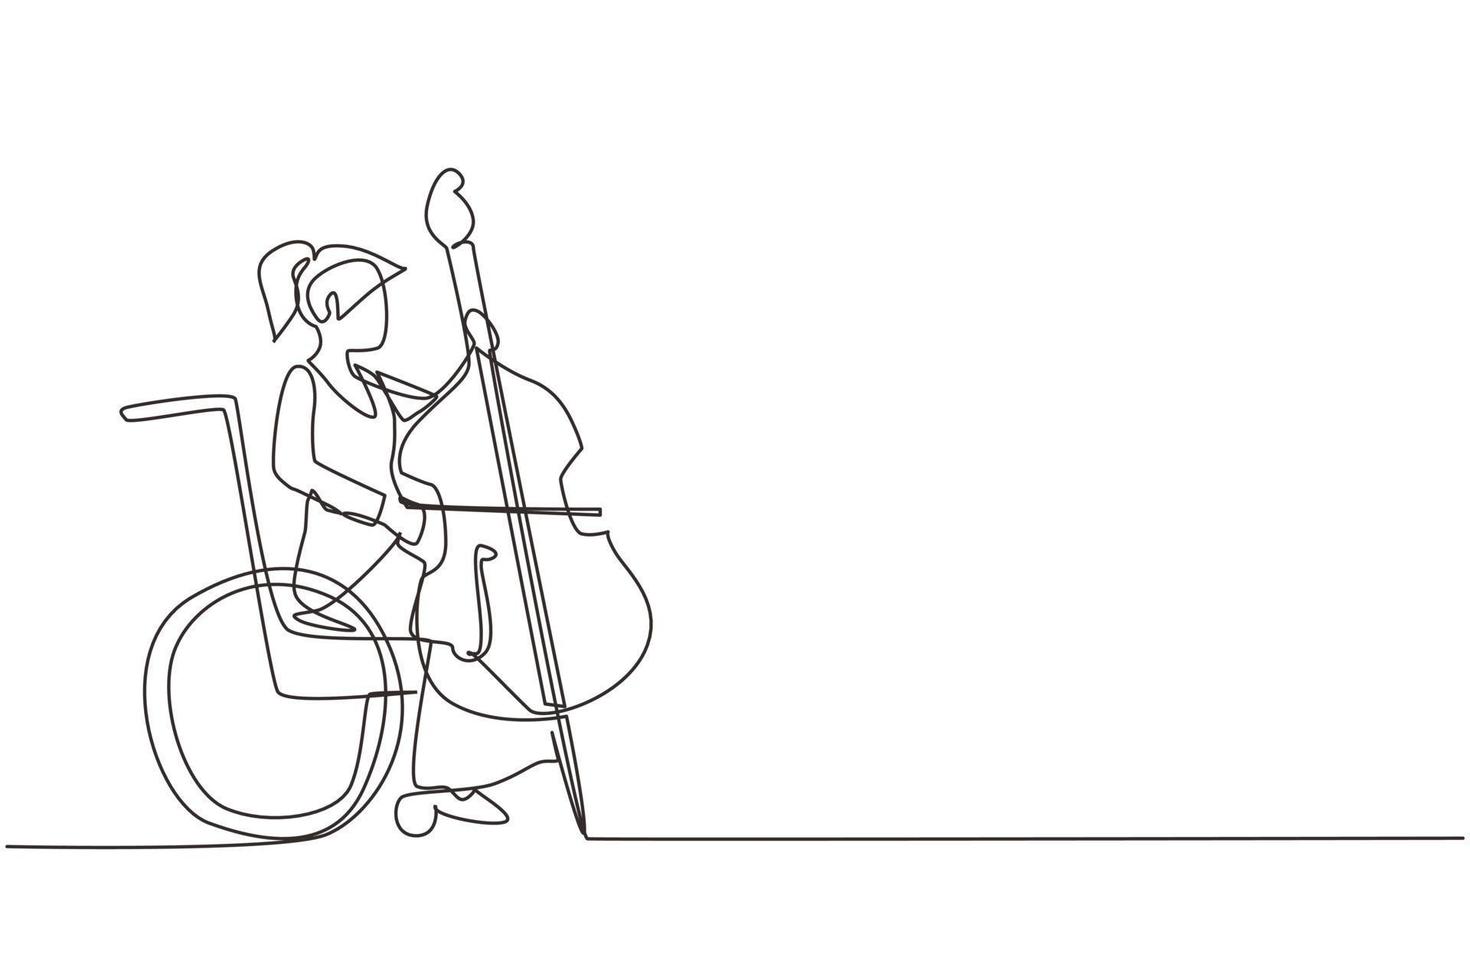 enkele een lijntekening vrouw zittend in een rolstoel speelt cello in opera concert. handicap en klassieke muziek. fysiek niet in staat. doorlopende lijn tekenen ontwerp grafische vectorillustratie vector